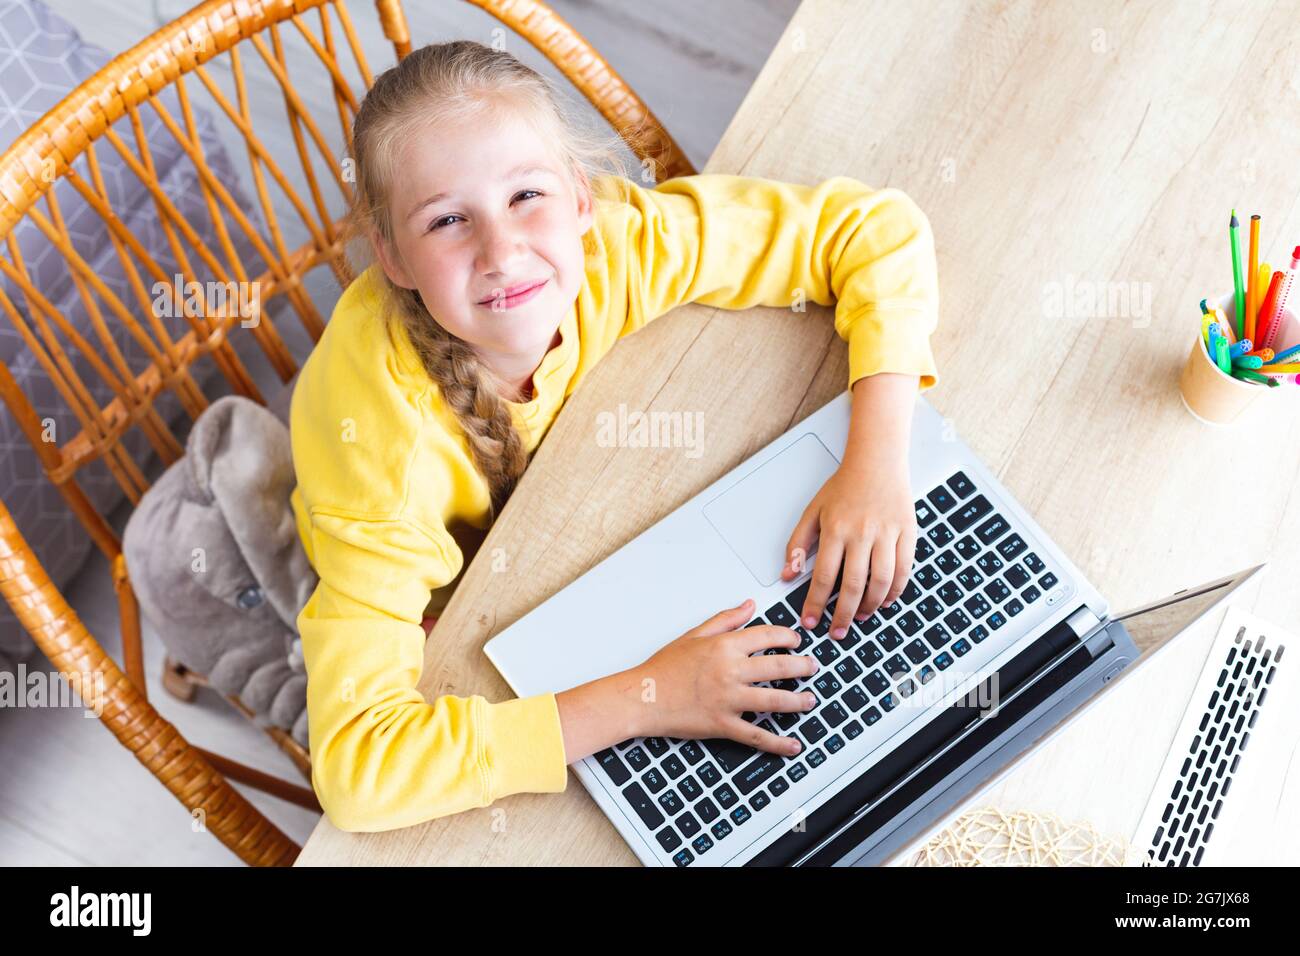 Caucasienne fille de 10-11 ans s'assoit à un bureau en bois clair, les mains sur le clavier d'ordinateur portable, regardant la caméra des yeux qui s'accroupient, vue de dessus. Asthme Banque D'Images